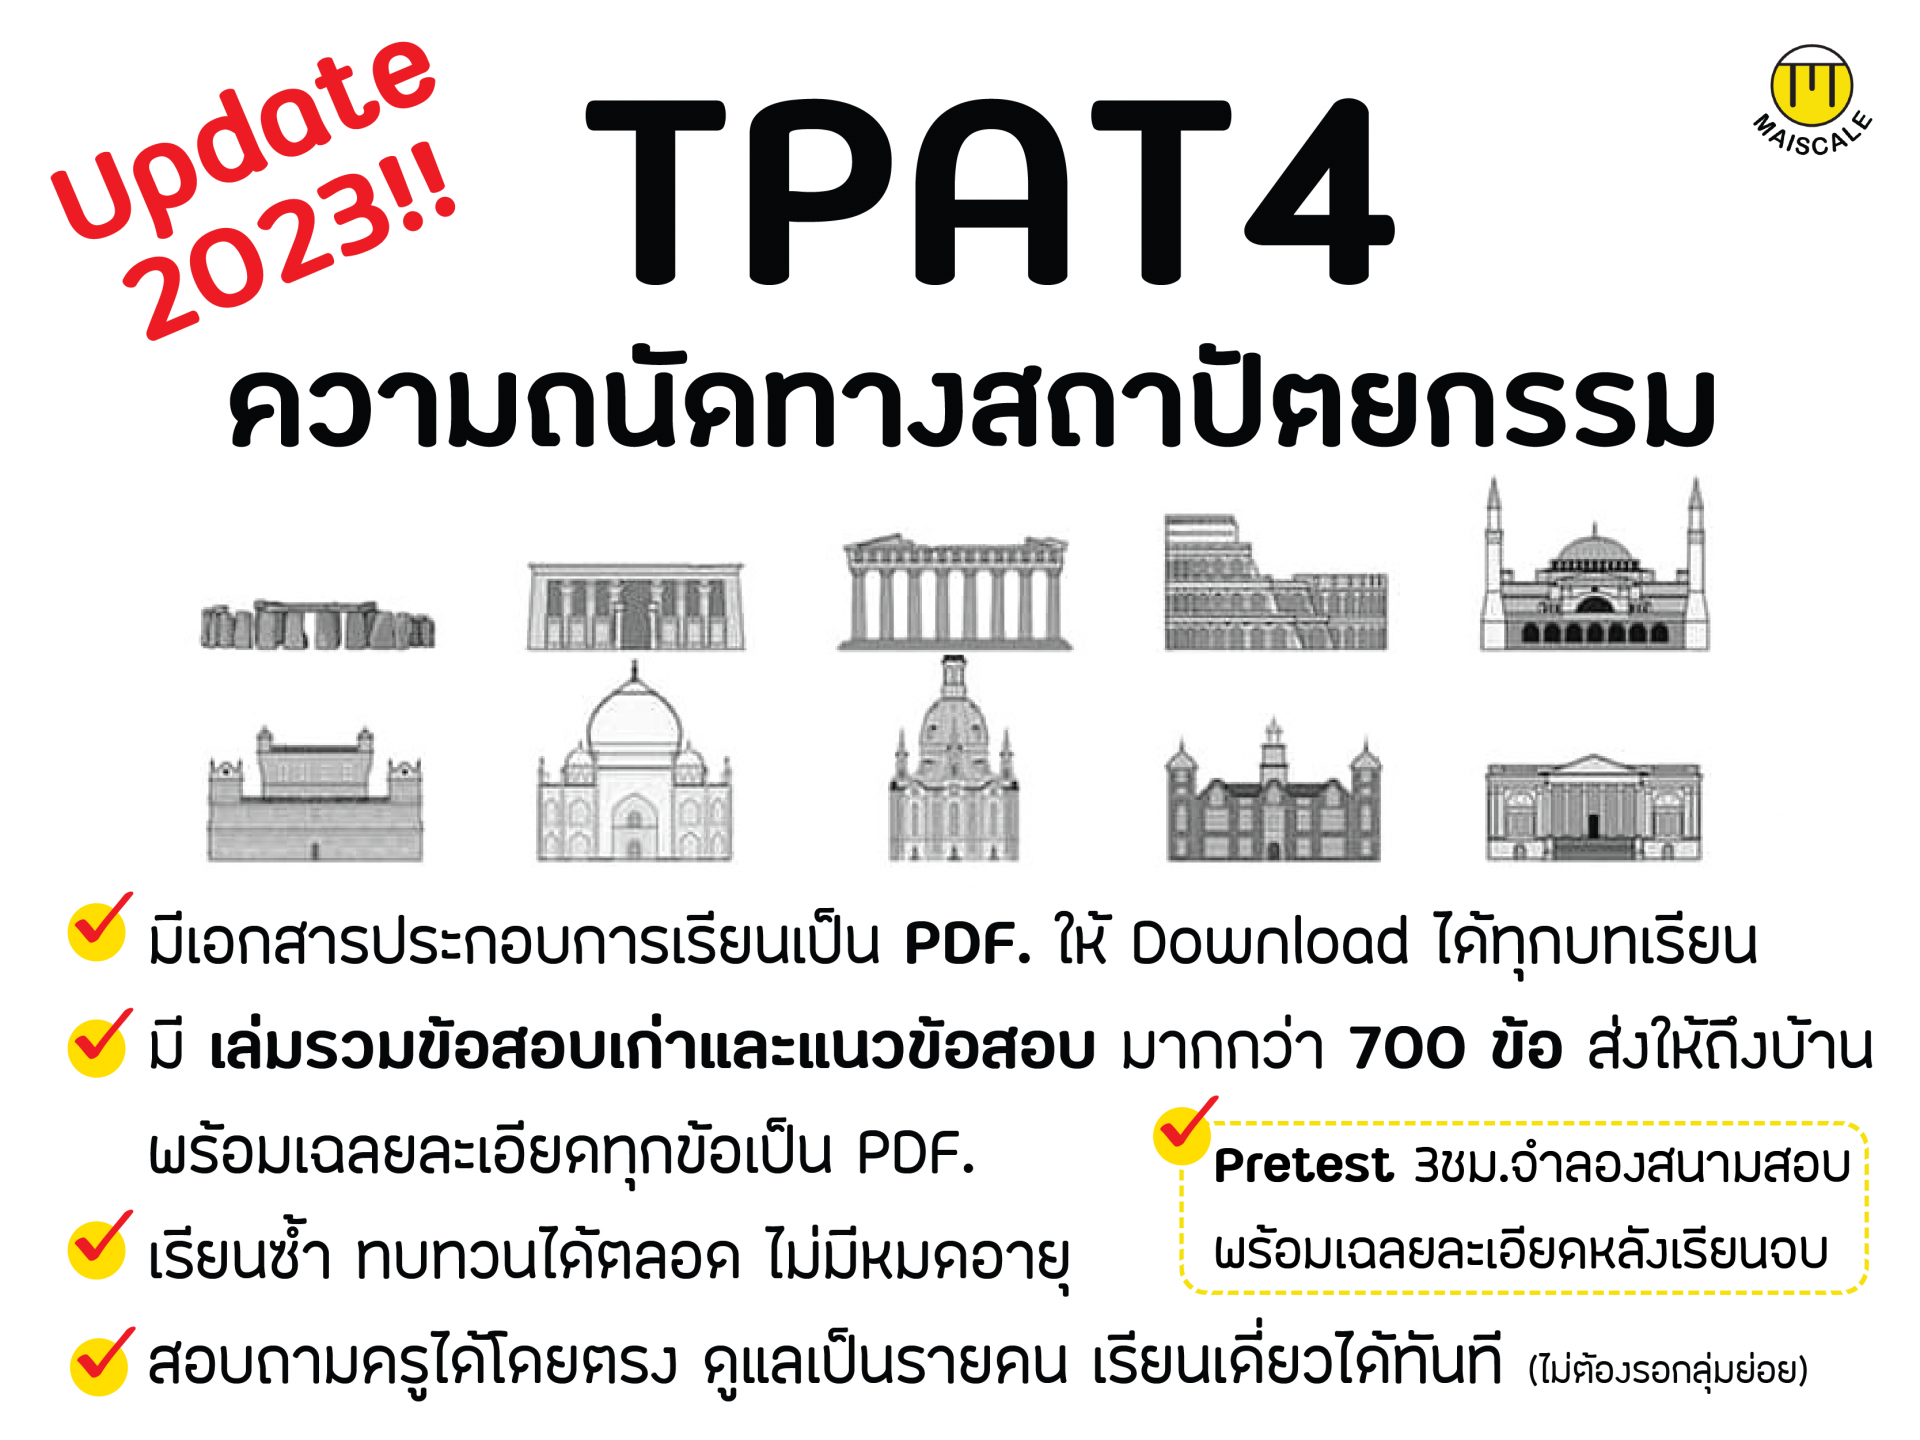 TPAT4 คอร์สติวความถนัดทางสถาปัตยกรรม 